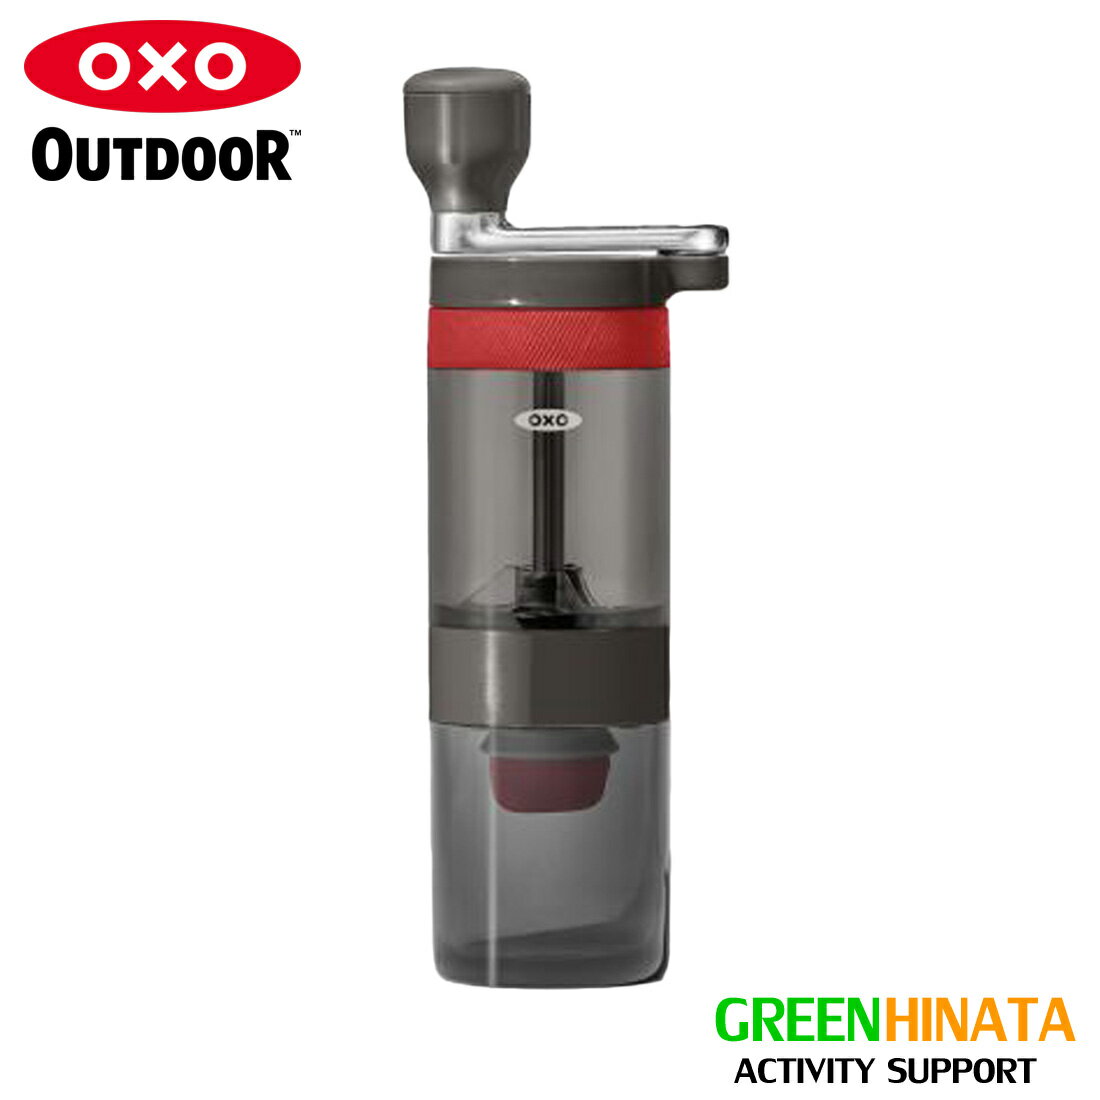 【国内正規品】 オクソー マニュアル コーヒー グラインダー グリルパン OXO OXO ODR_MANUAL COFFEE GRINDER